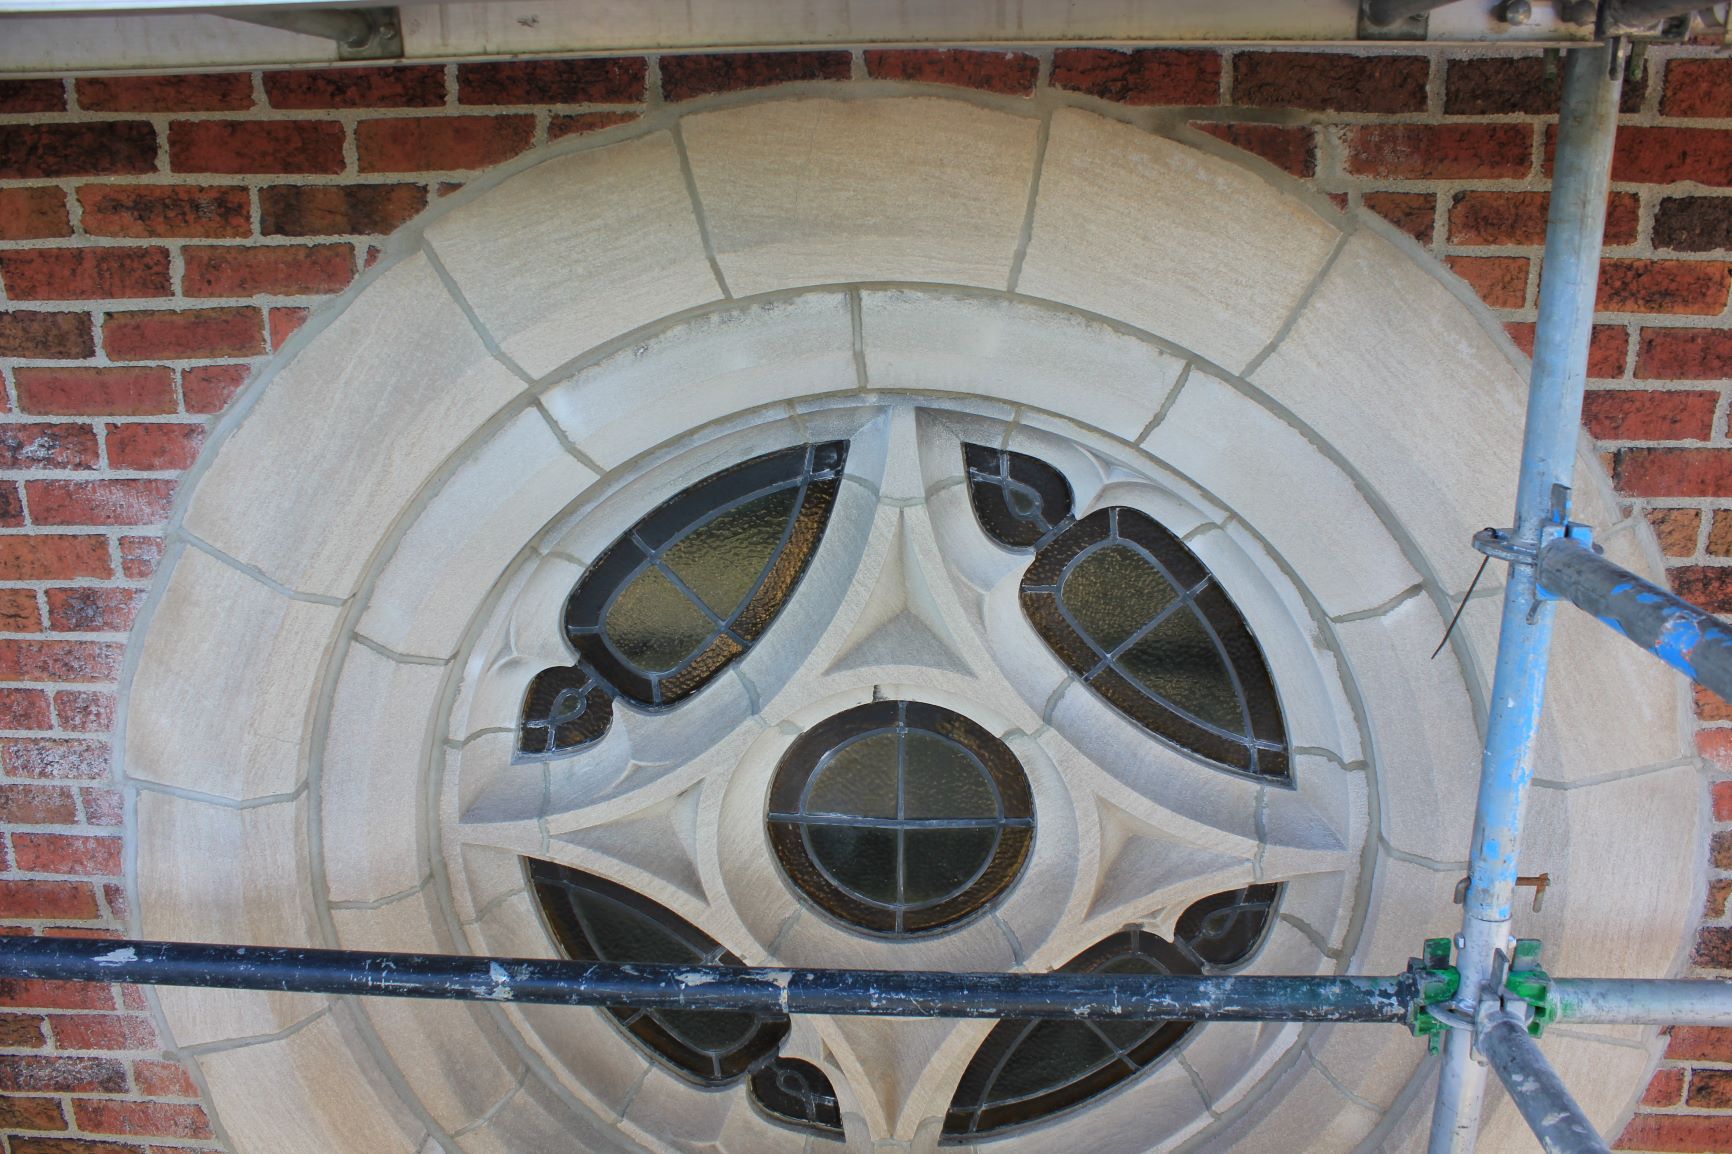 Closeup of Circular Window from Scaffolding